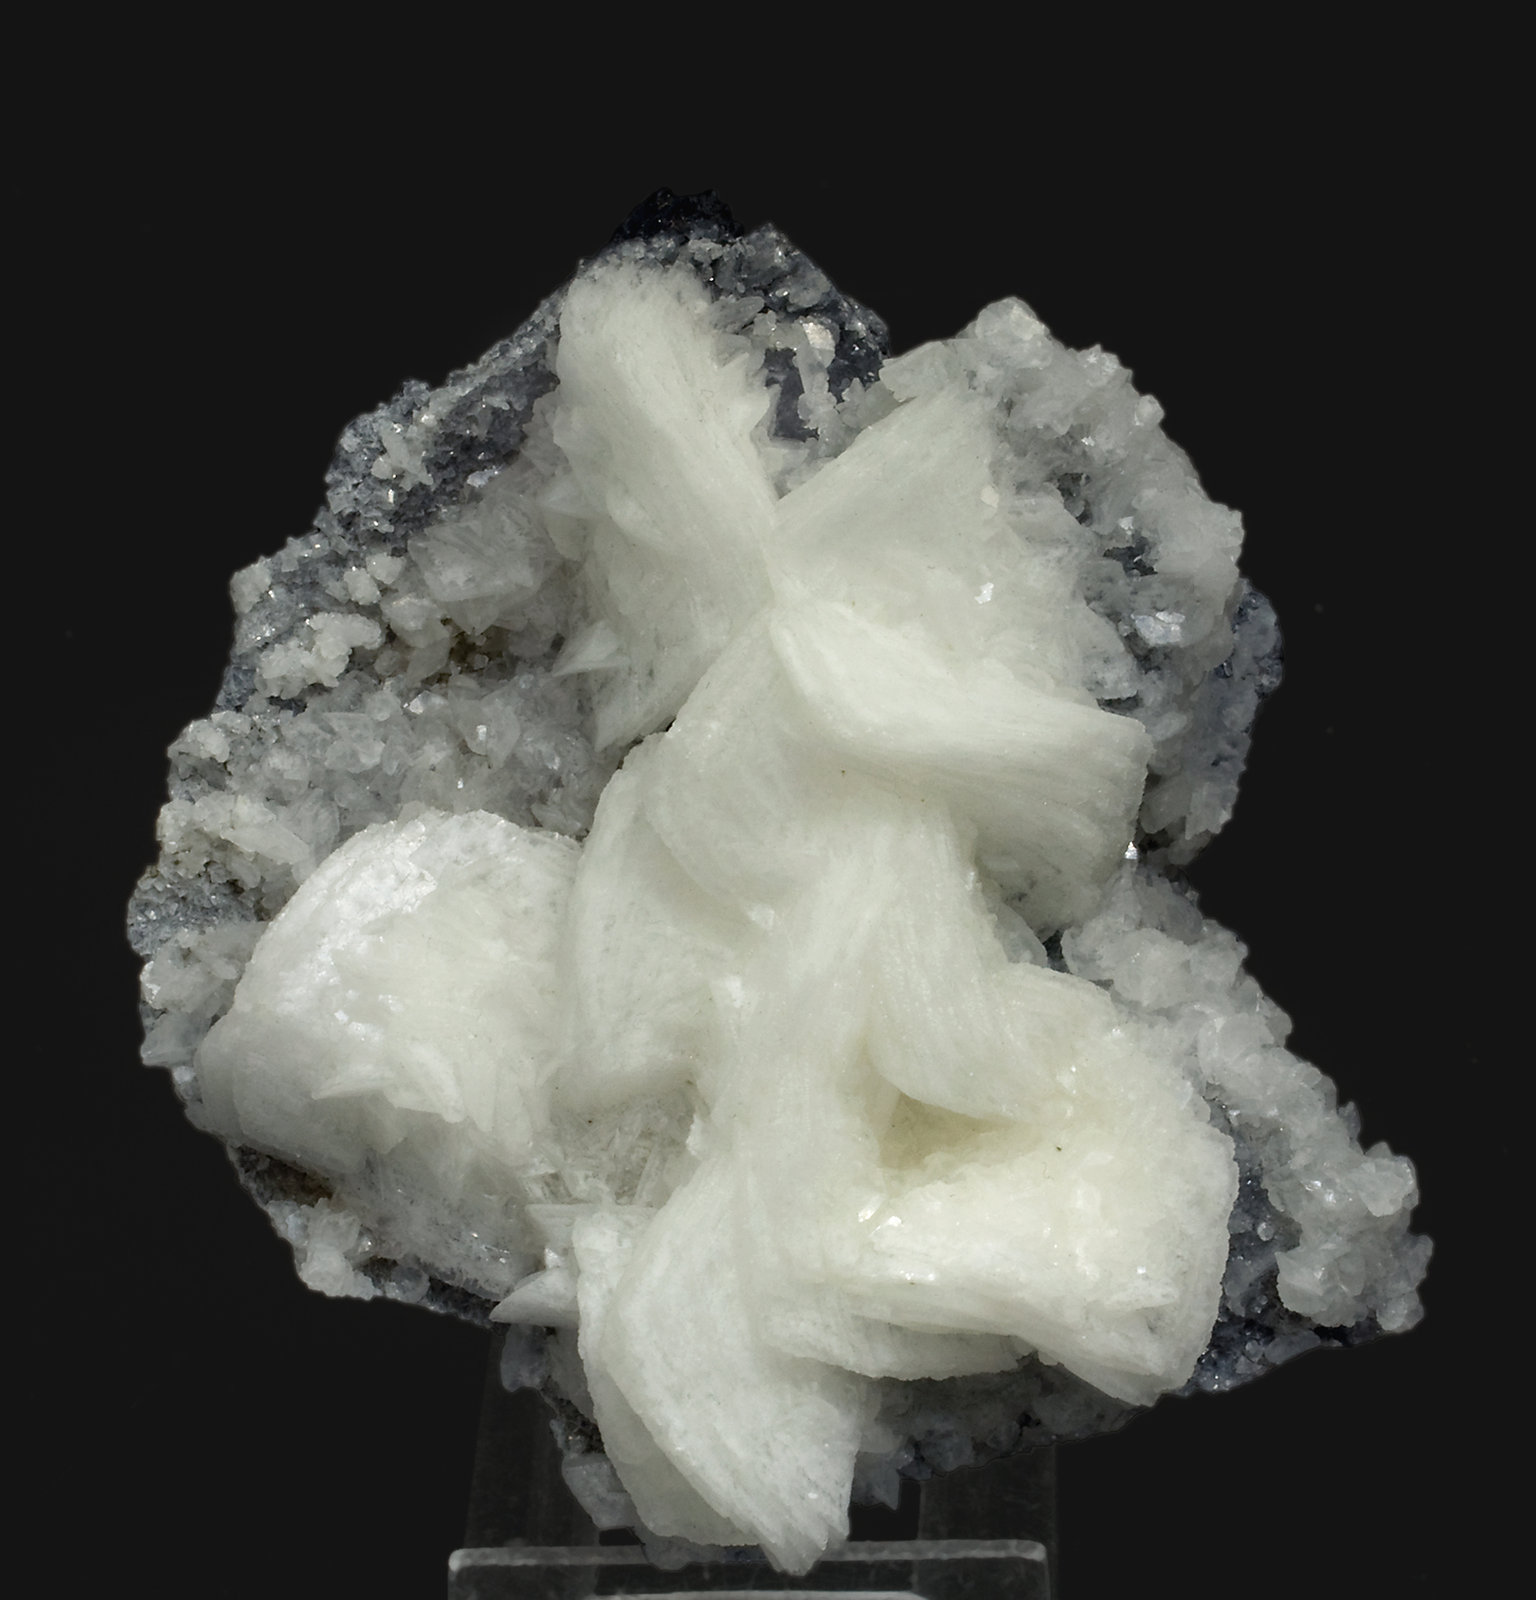 specimens/s_imagesT8/Calcite-EQ14T8f.jpg